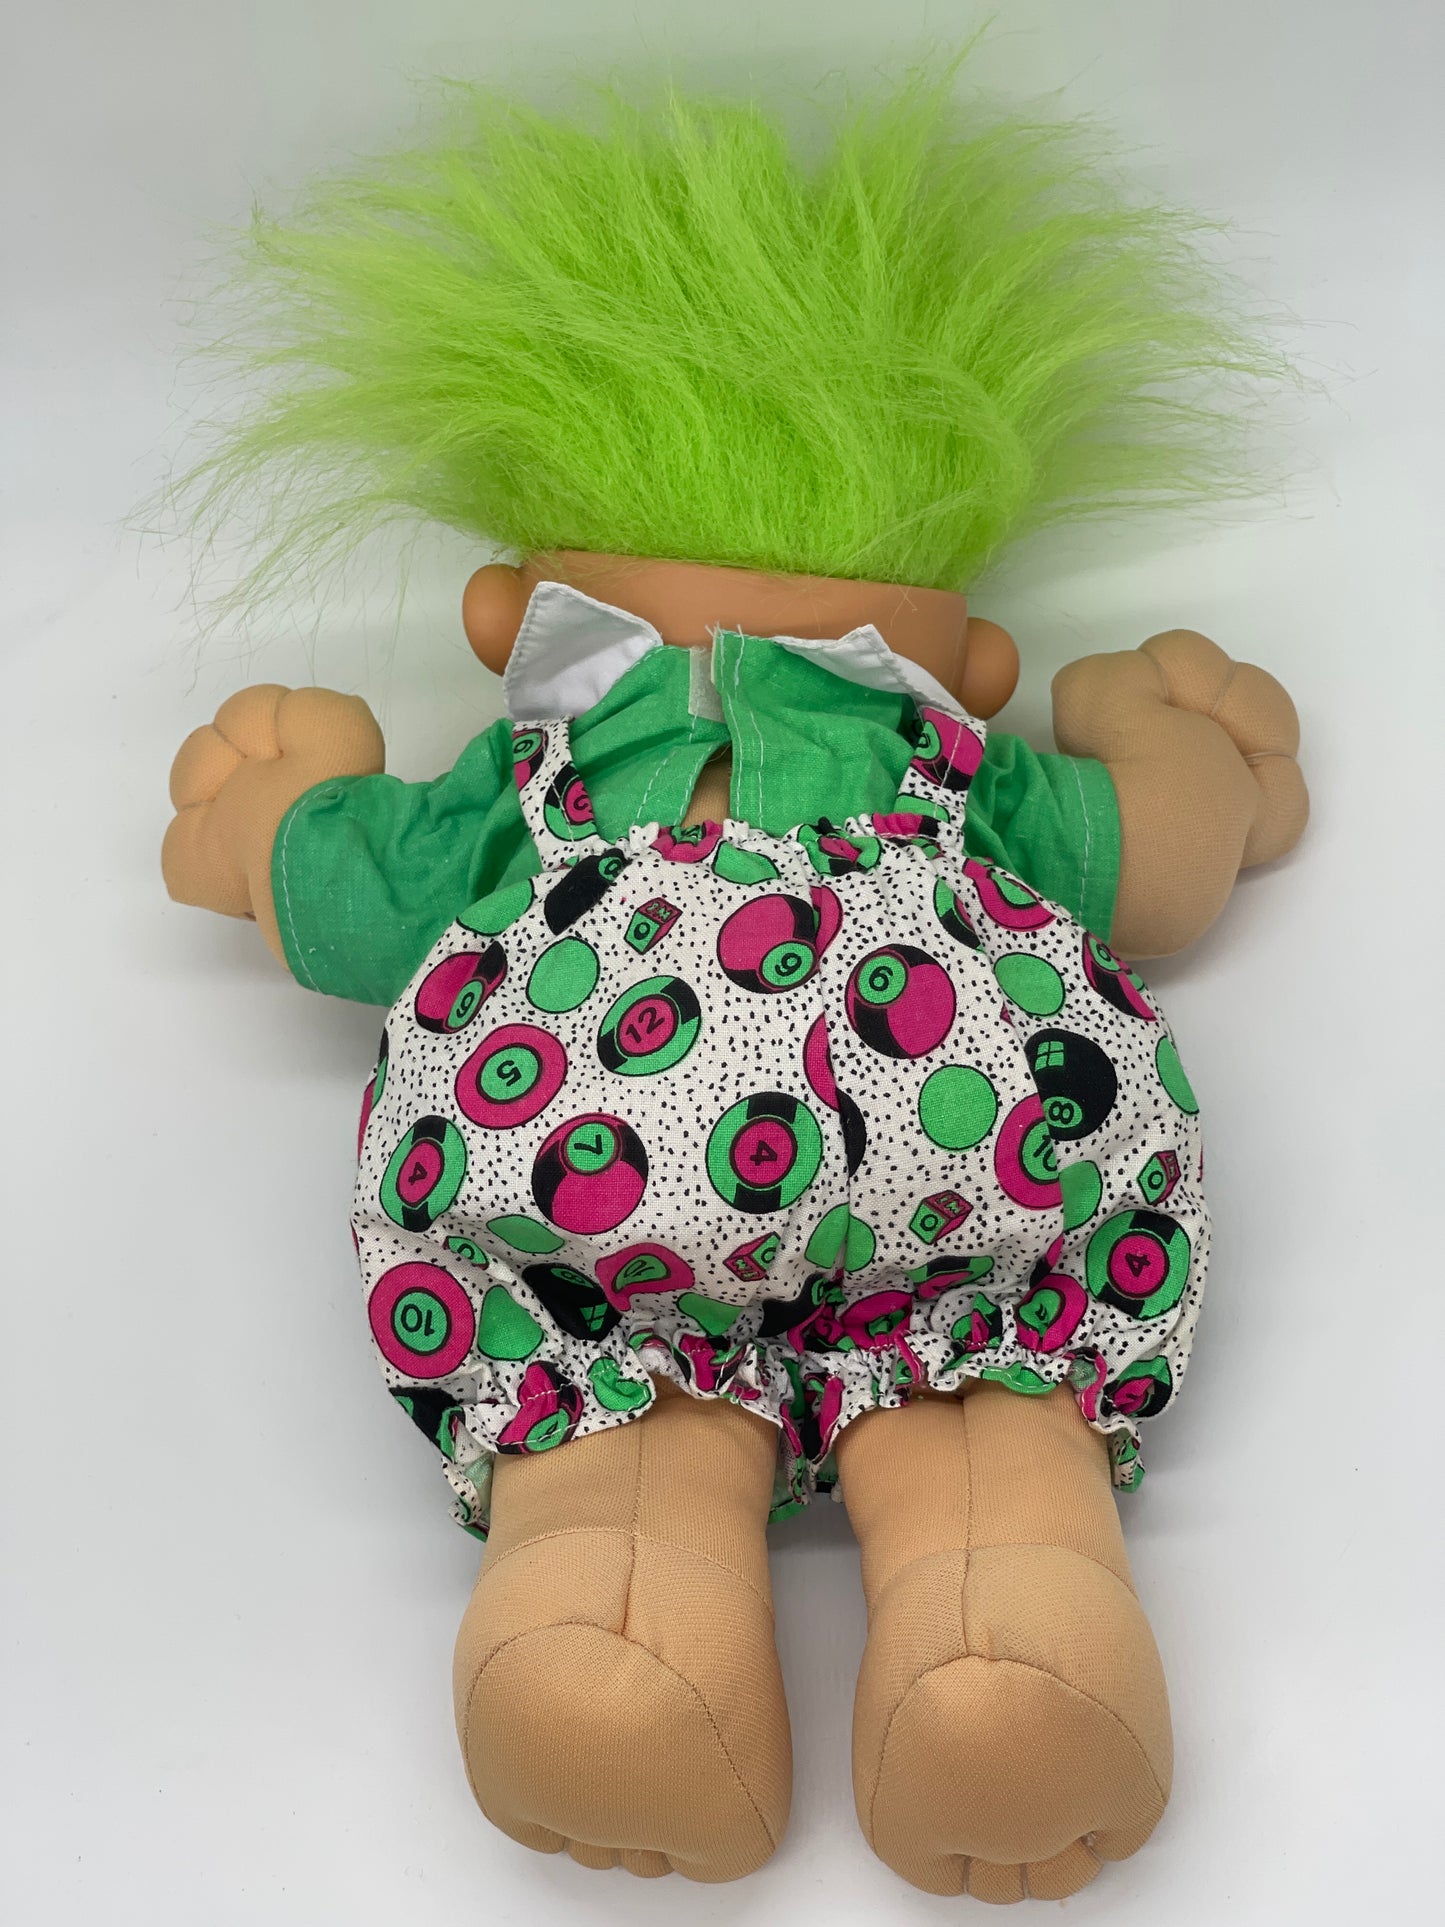 Die Trolls "Plüsch / Stoff" Glückstroll Zaubertroll grünes Haar 90er Jahre (Vintage)